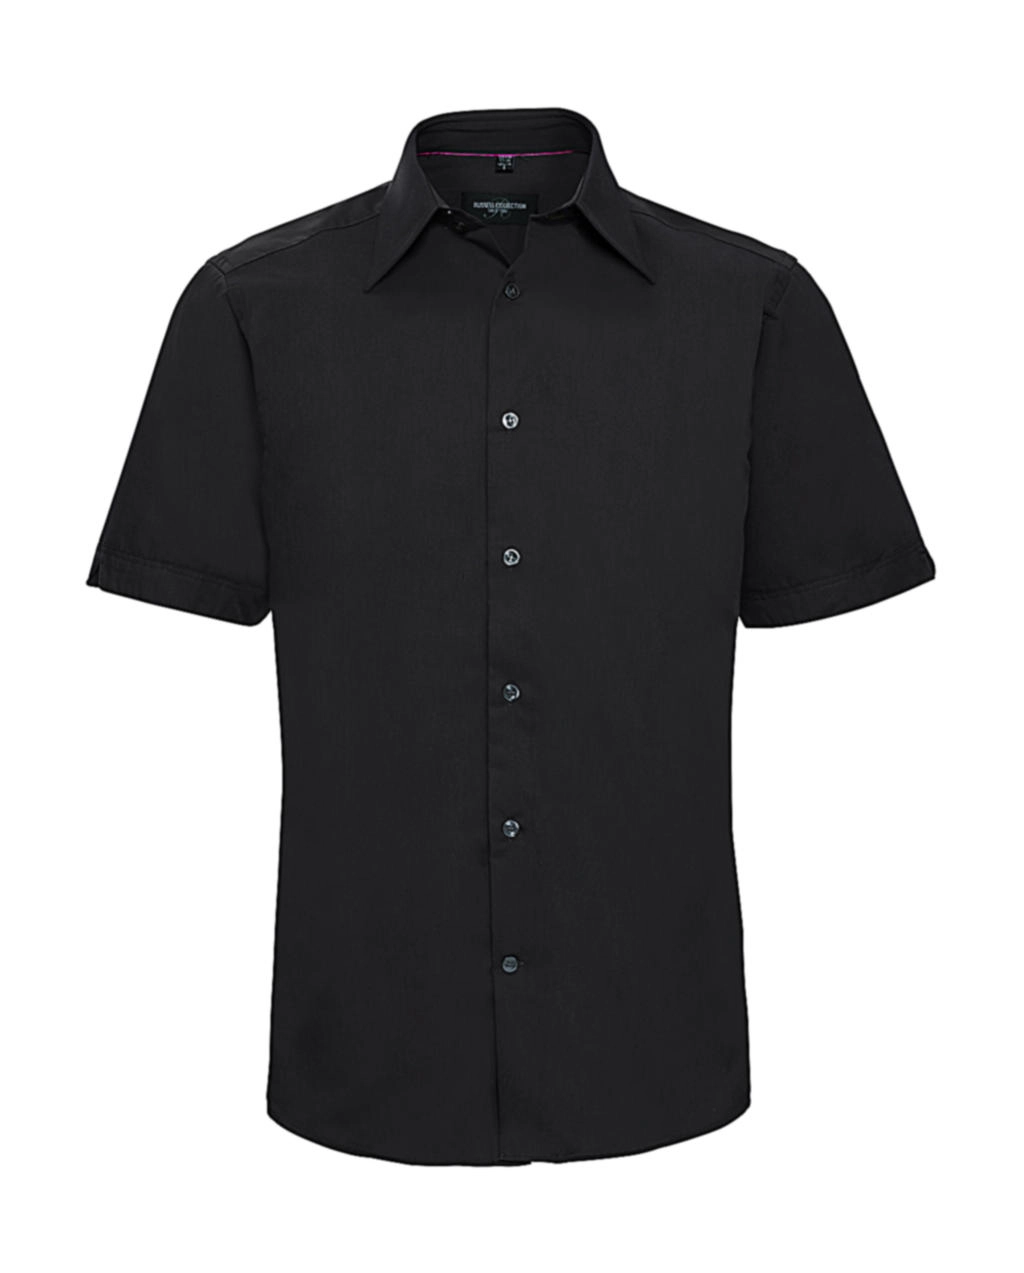 Tencel® Fitted Shirt zum Besticken und Bedrucken in der Farbe Black mit Ihren Logo, Schriftzug oder Motiv.